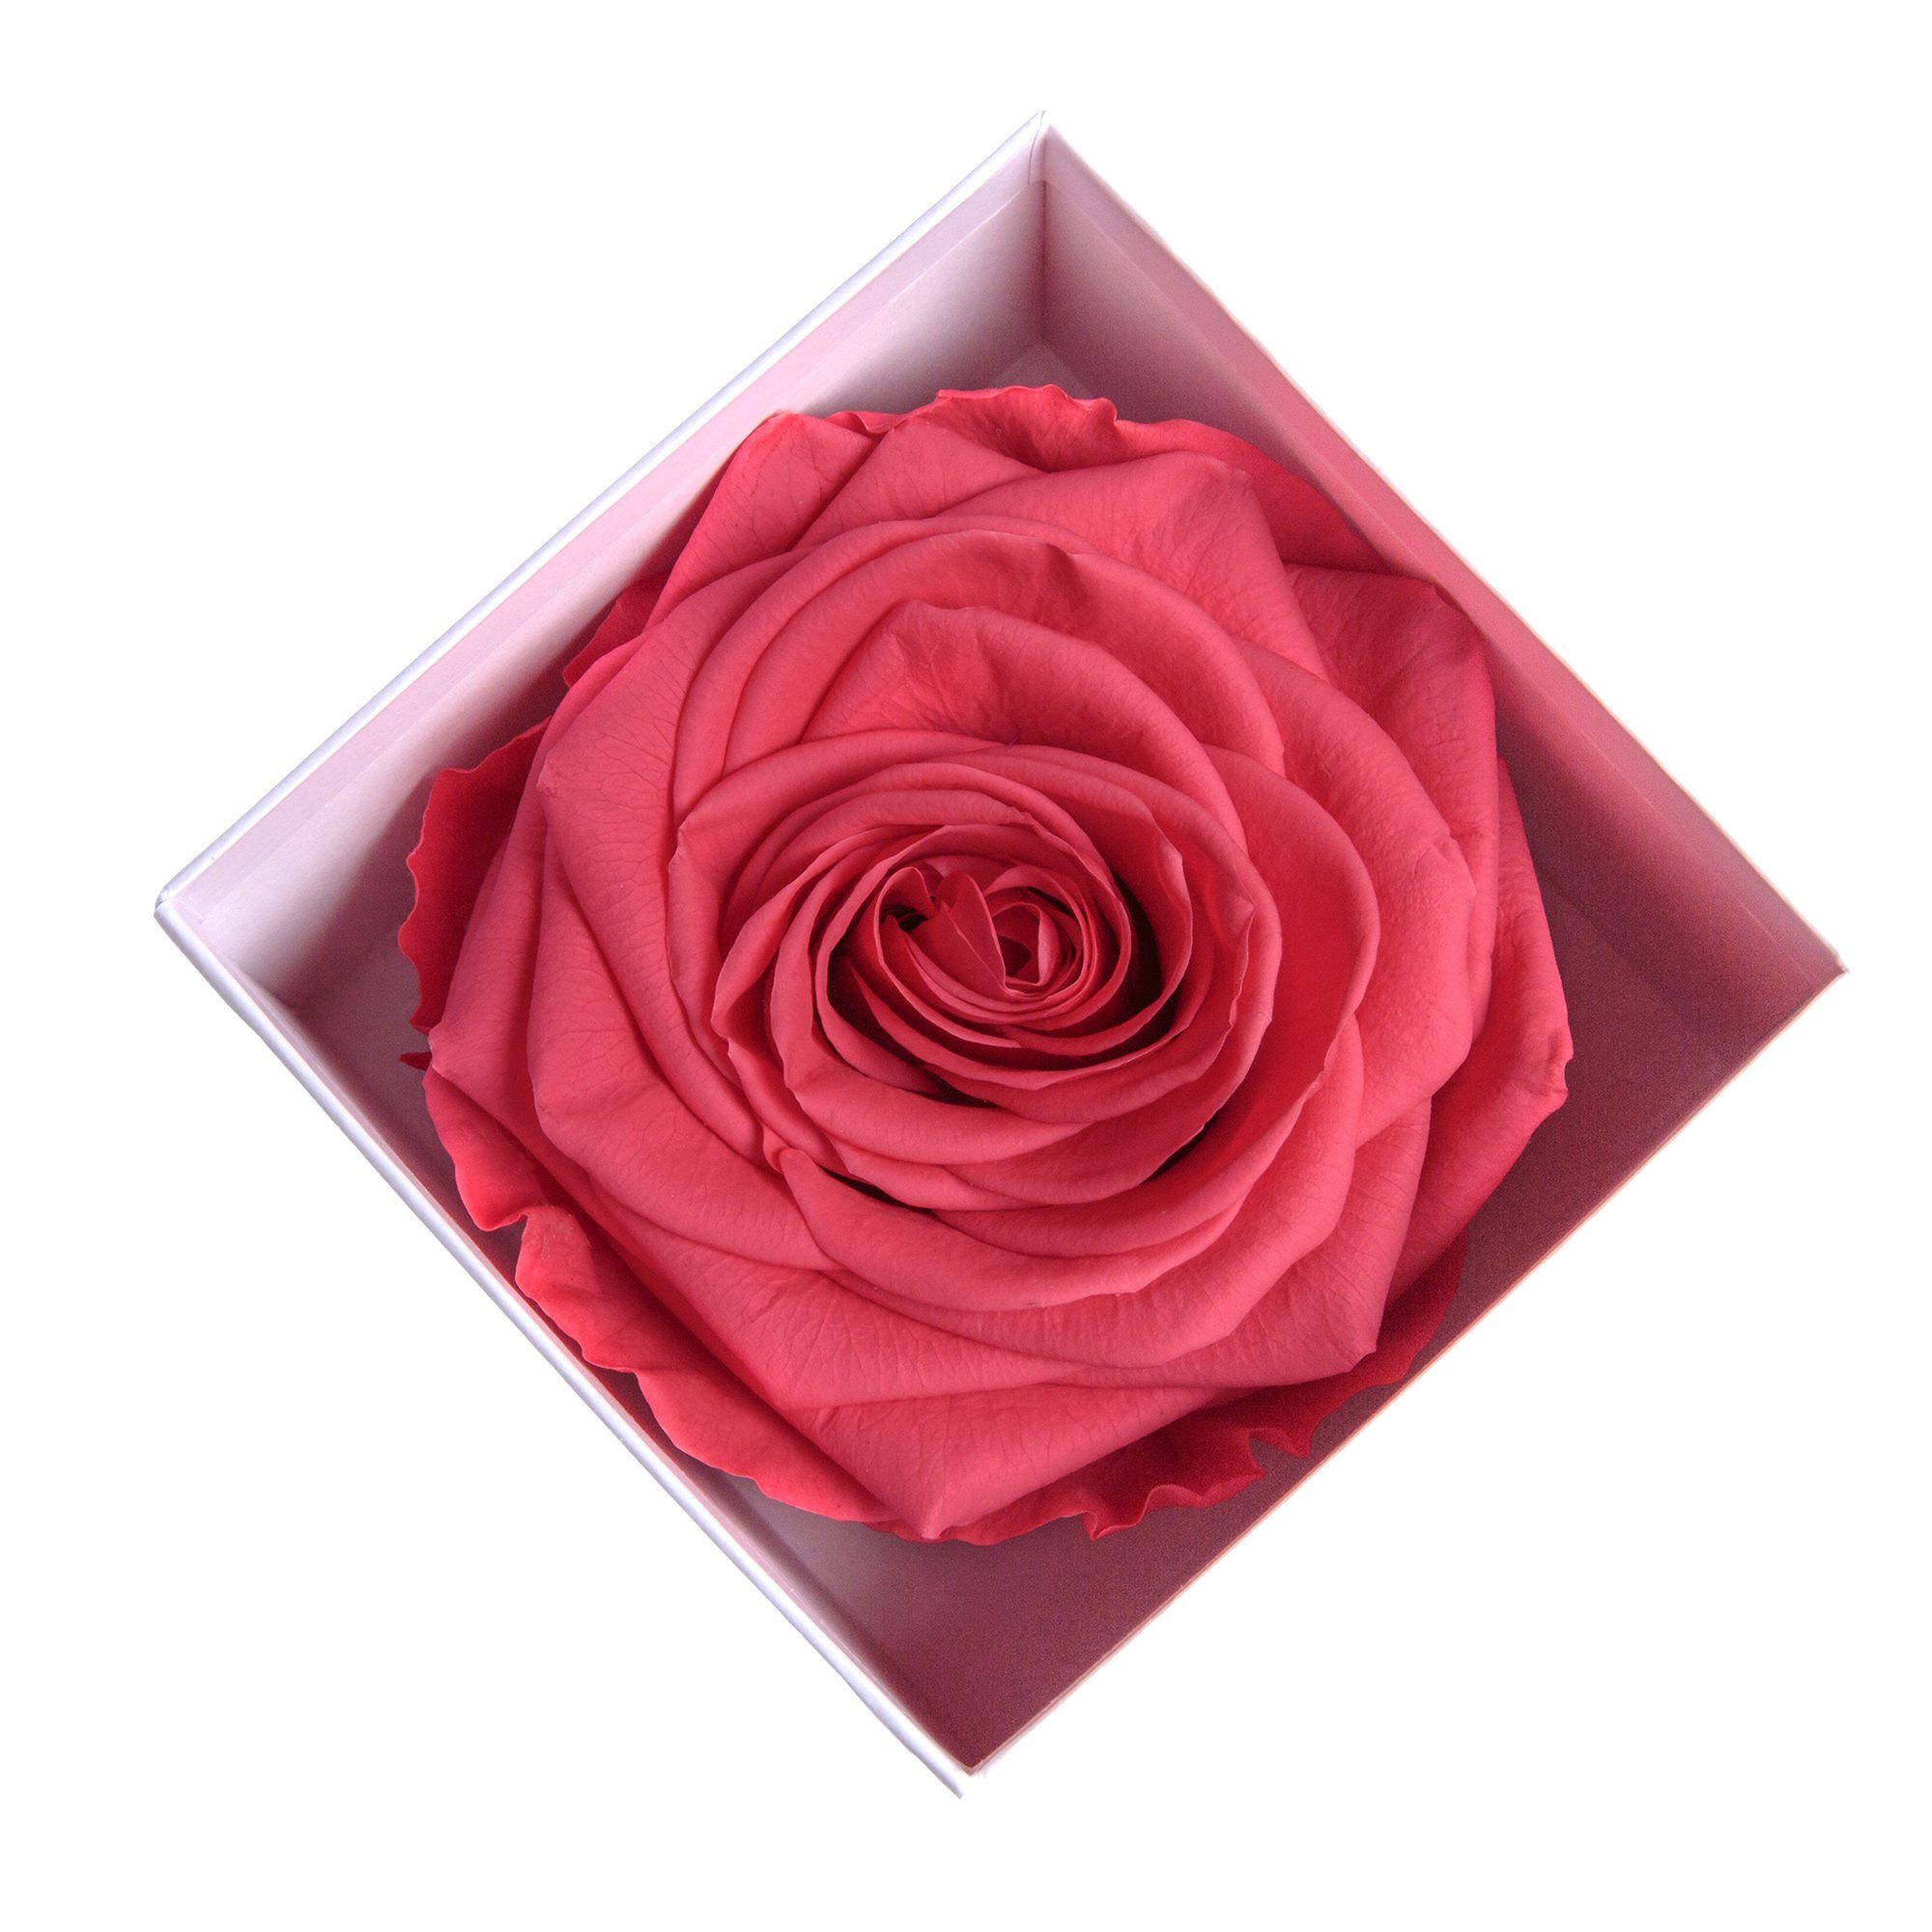 SCHULZ I Höhe Box zu pink Valentinstag Liebesbeweis Rose Infinity 3 in ROSEMARIE cm, LOVE Jahre Heidelberg, 6 weiß Geschenk Kunstblume YOU Frauen Rose bis haltbar Rose,